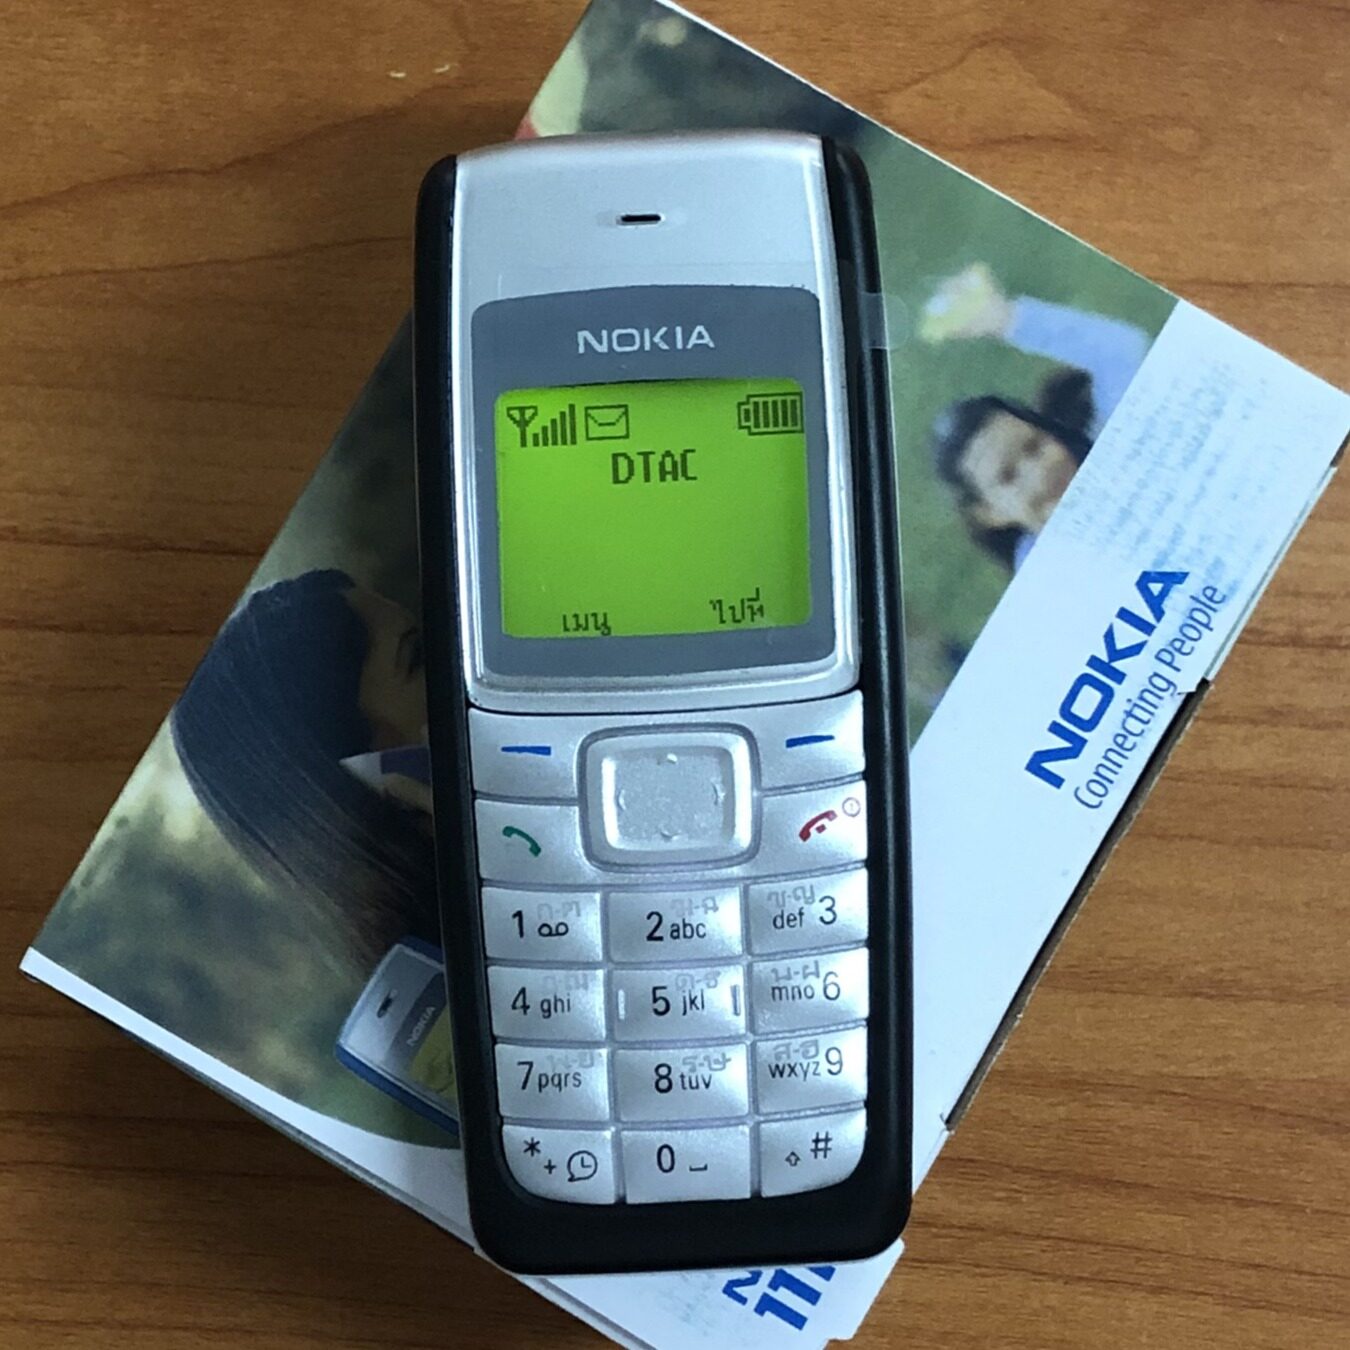 โทรศัพท์ผู้สูงอายุ Nokia 1110i โทรศัพท์ผู้สูงอายุปุ่มบาร์โทรศัพท์ผู้สูงอายุนักเรียนโทรศัพท์ผู้สูงอายุ